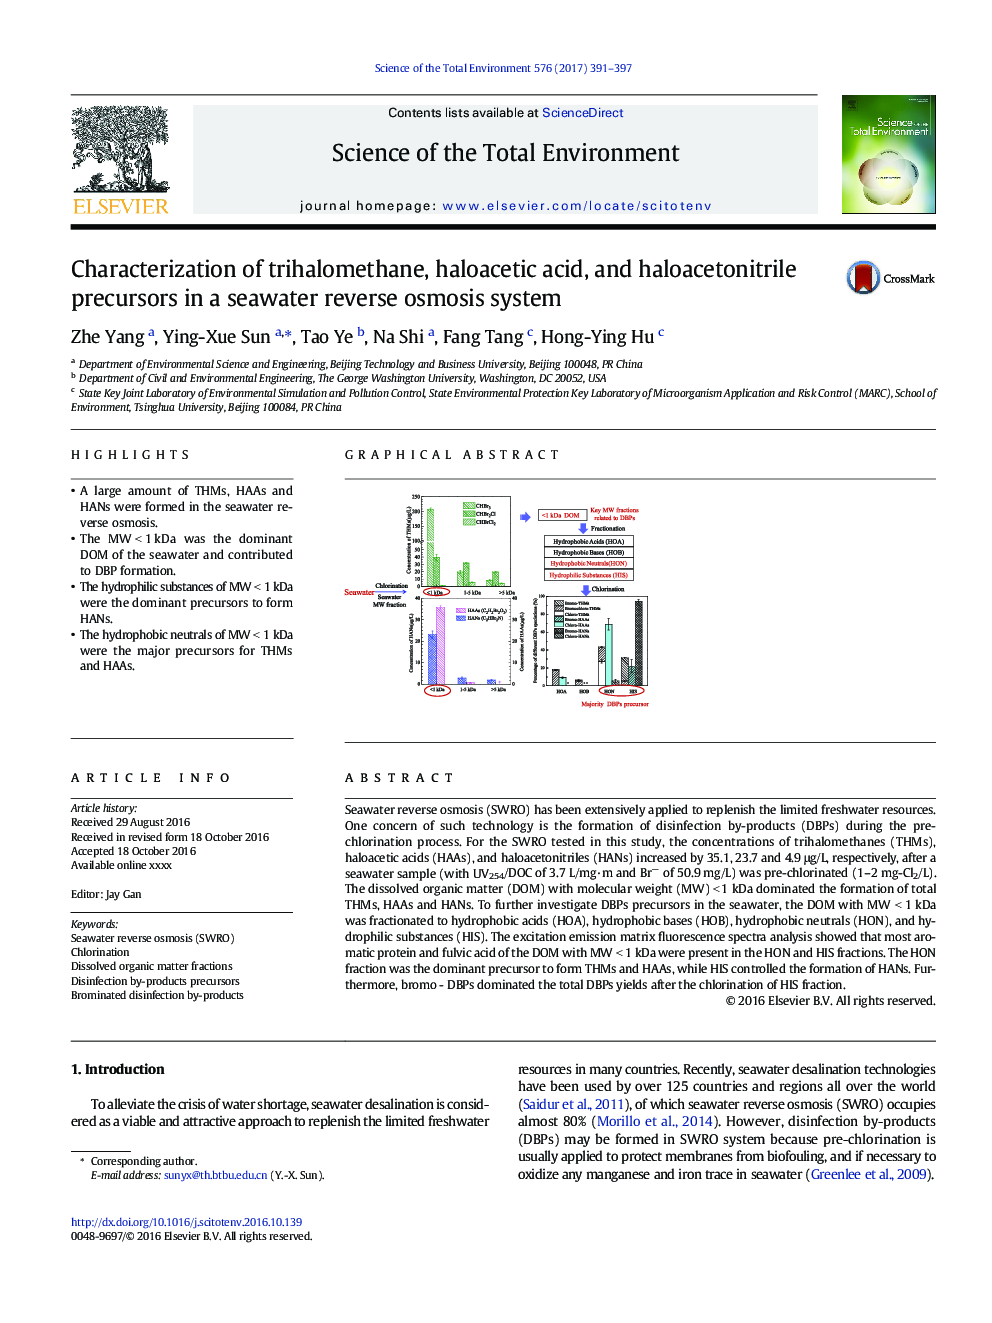 تعیین تری هالومتان، اسید هالو اکتیک و پیش سازهای هالو آستاونیتیلیل در سیستم اسمز معکوس آبی 